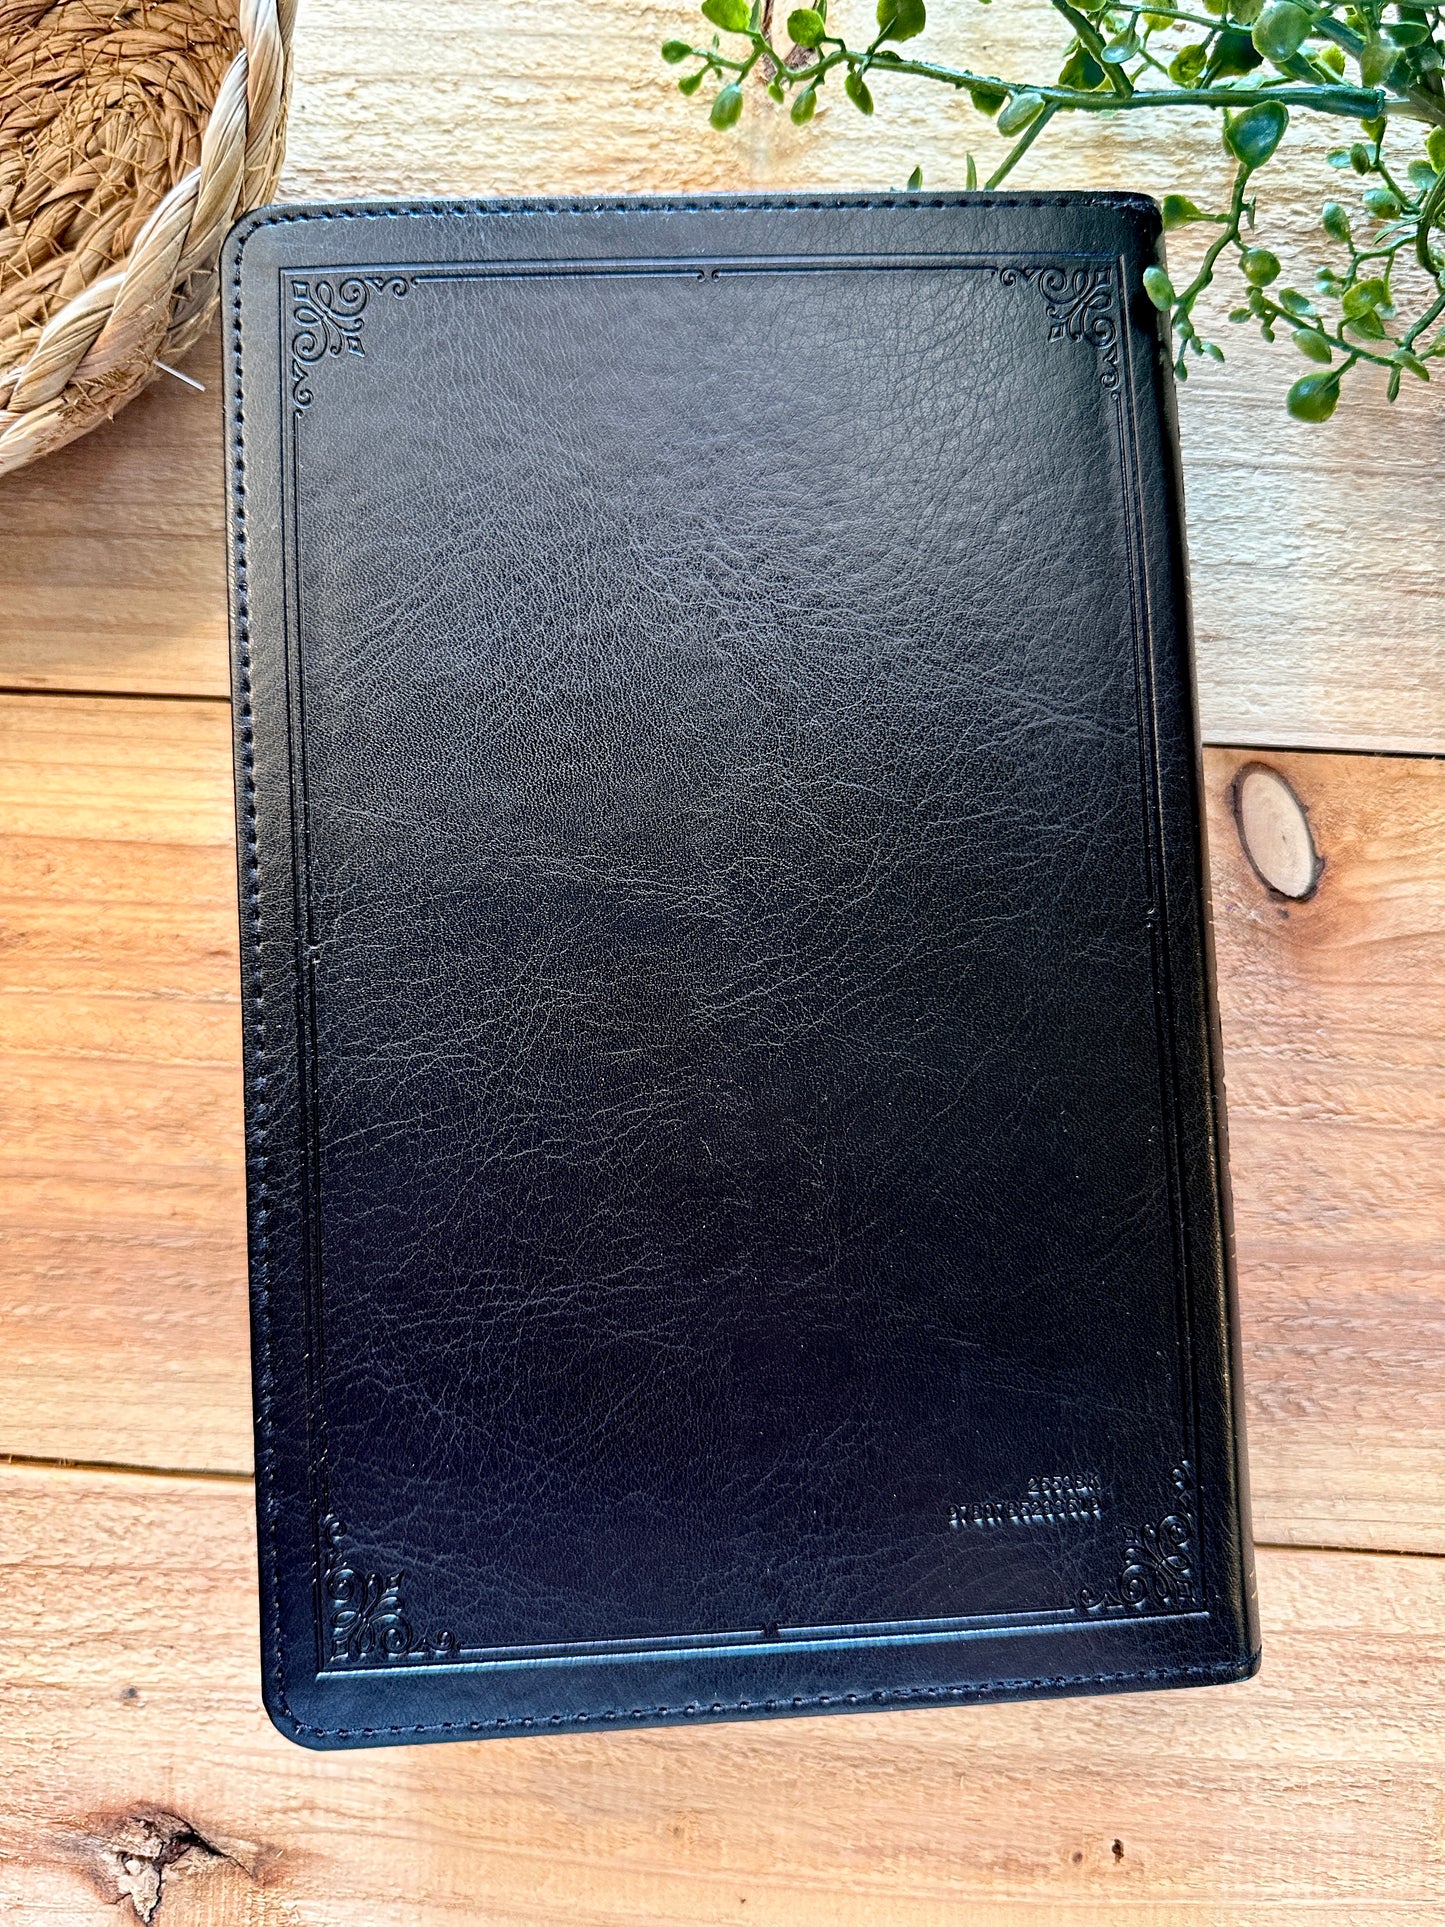 NKJV Black Leather Bible